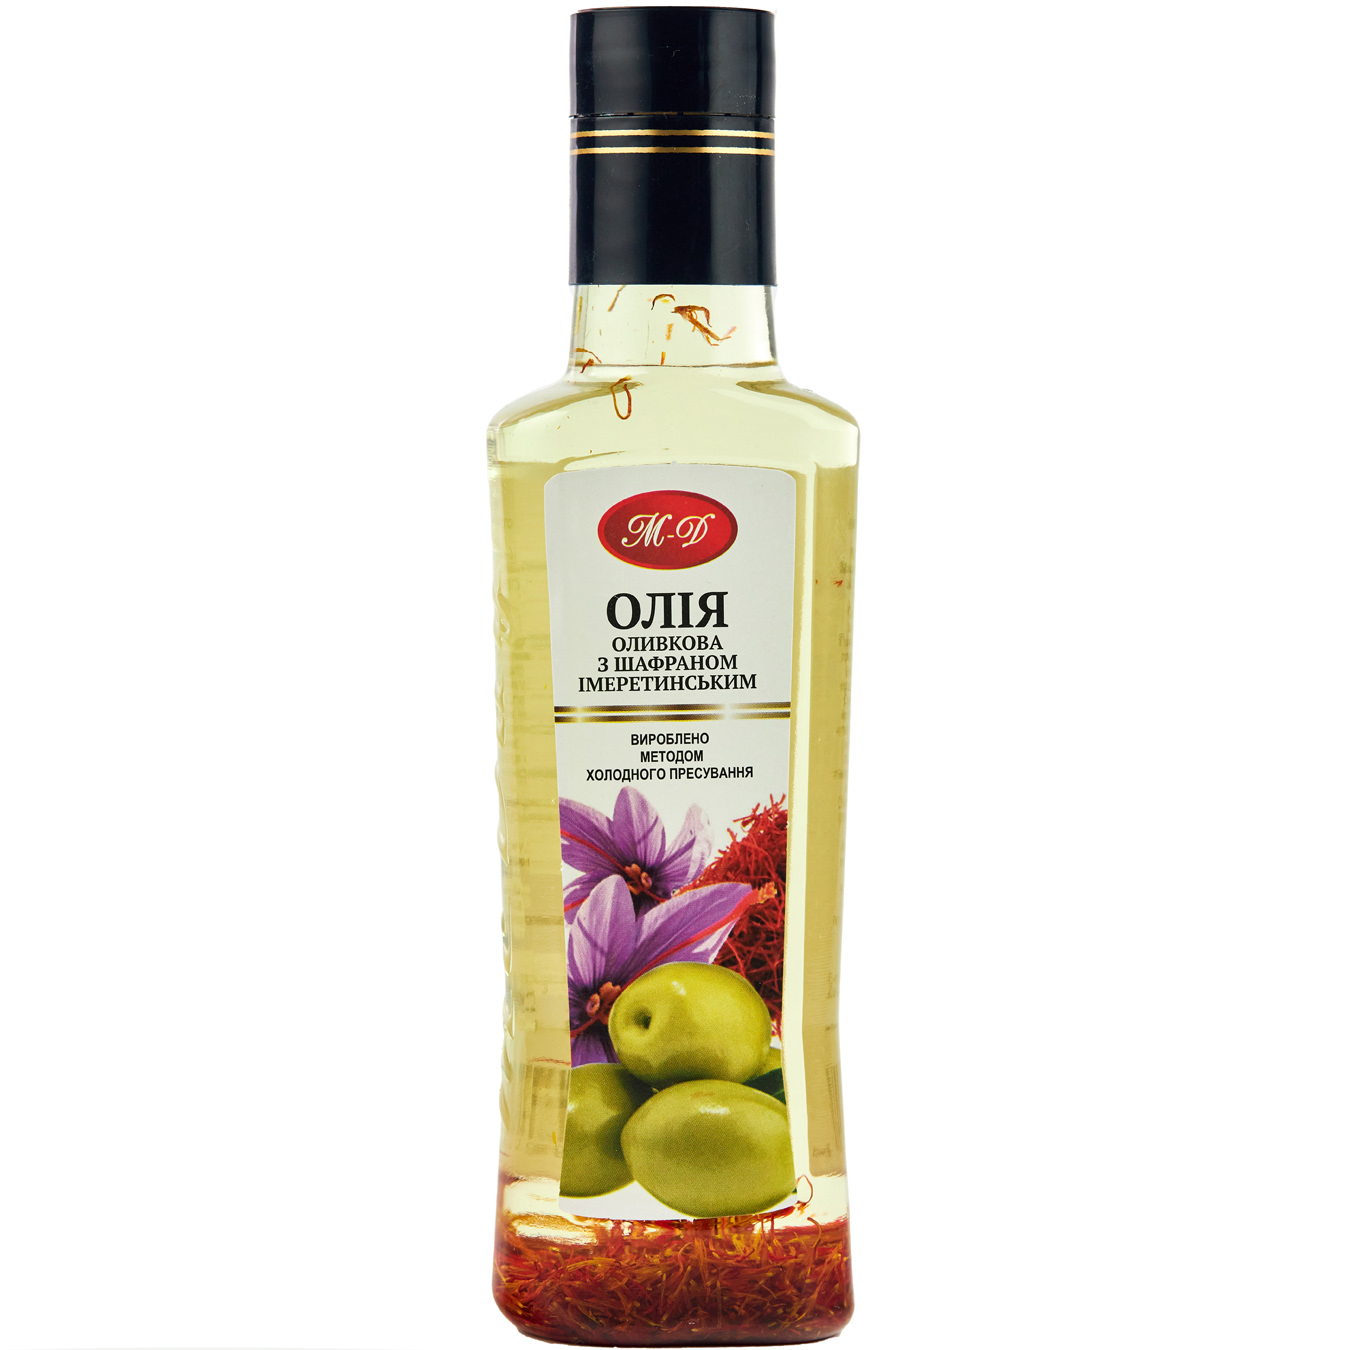 Олія оливкова Мак-Дей з шафраном імеретинським 200мл